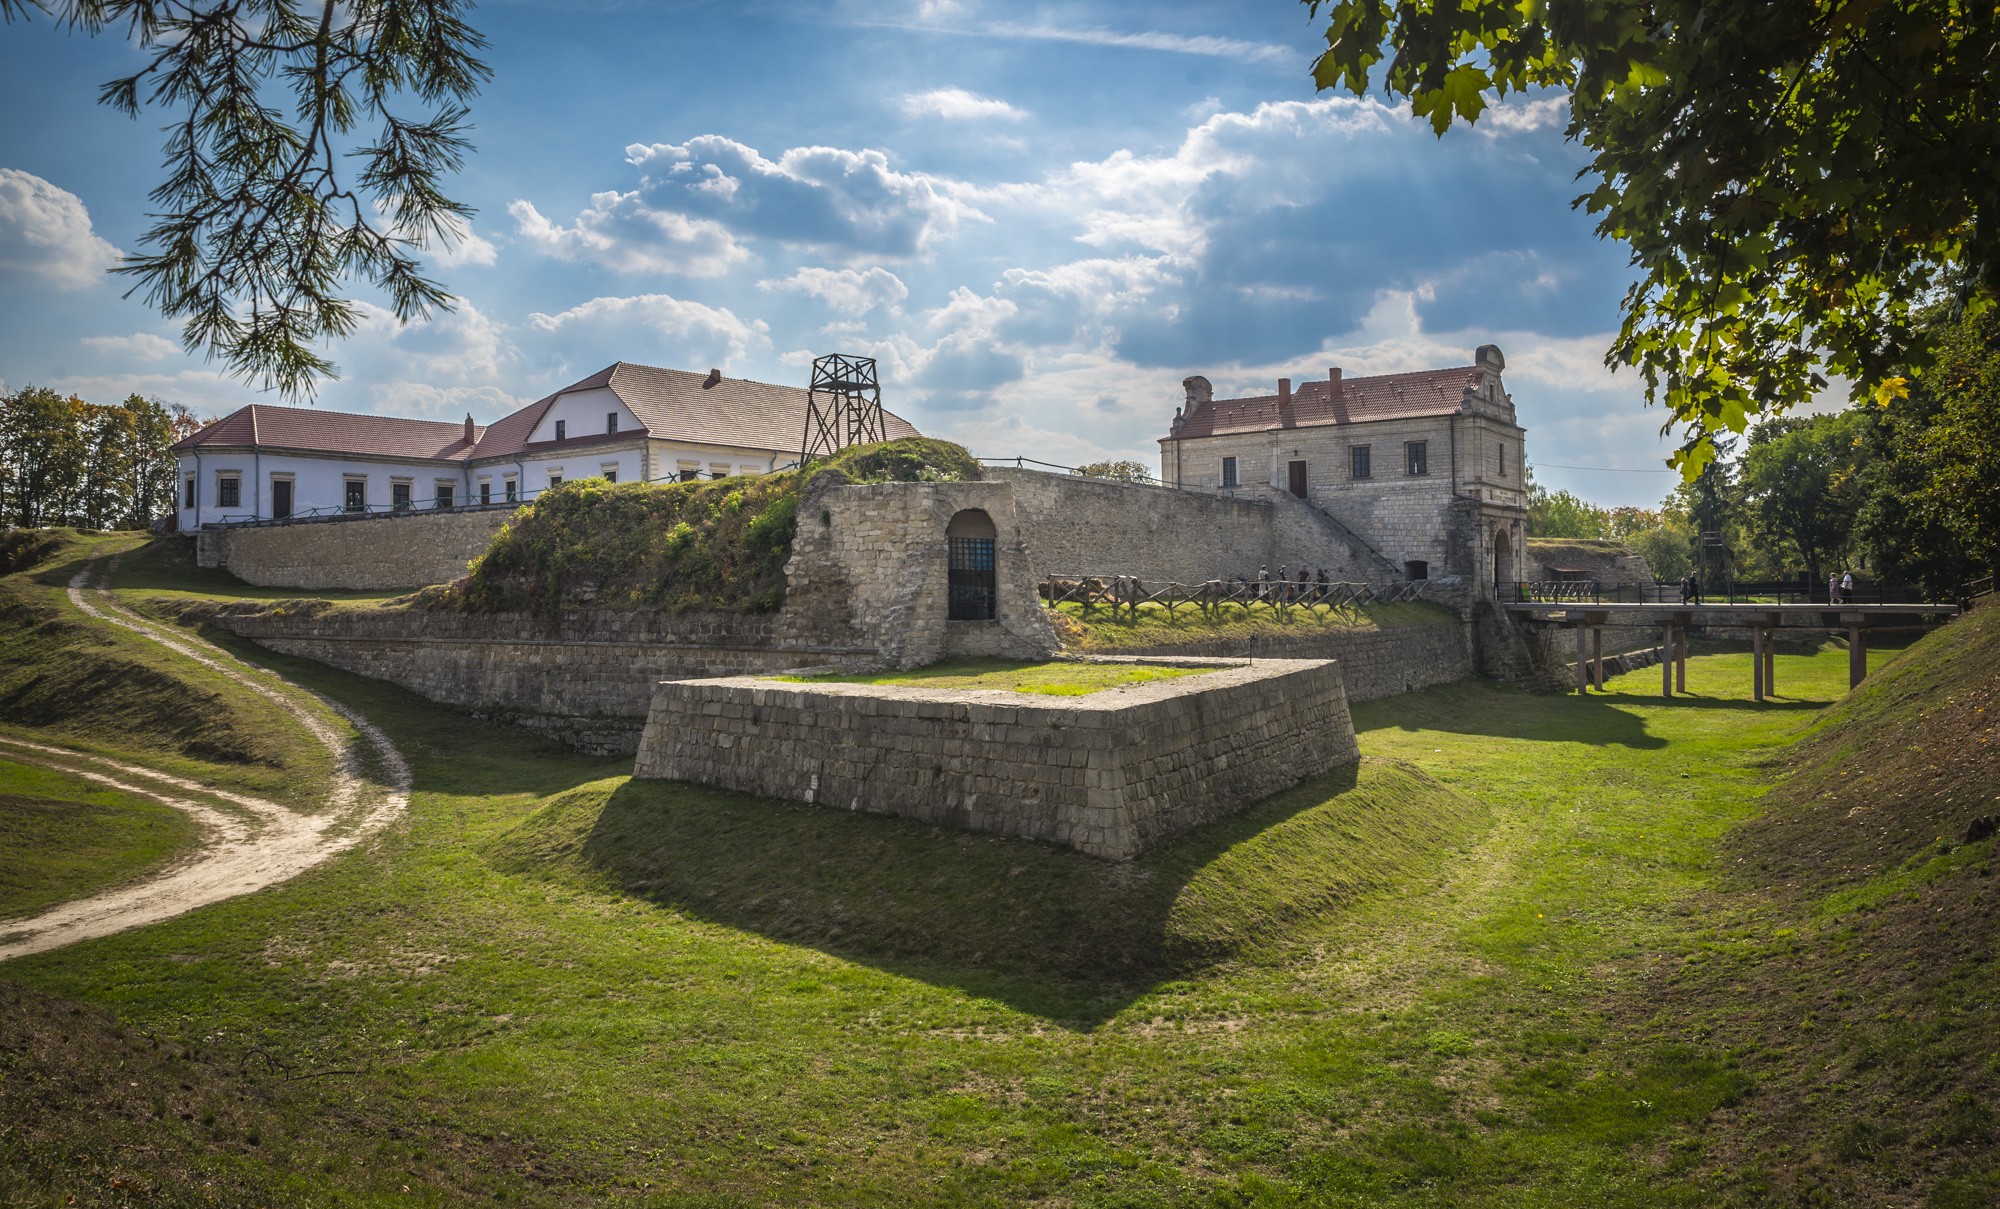 Фото: В Тернопольской области начались реставрационные работы в Збаражском замке по программе "Большая реставрация"